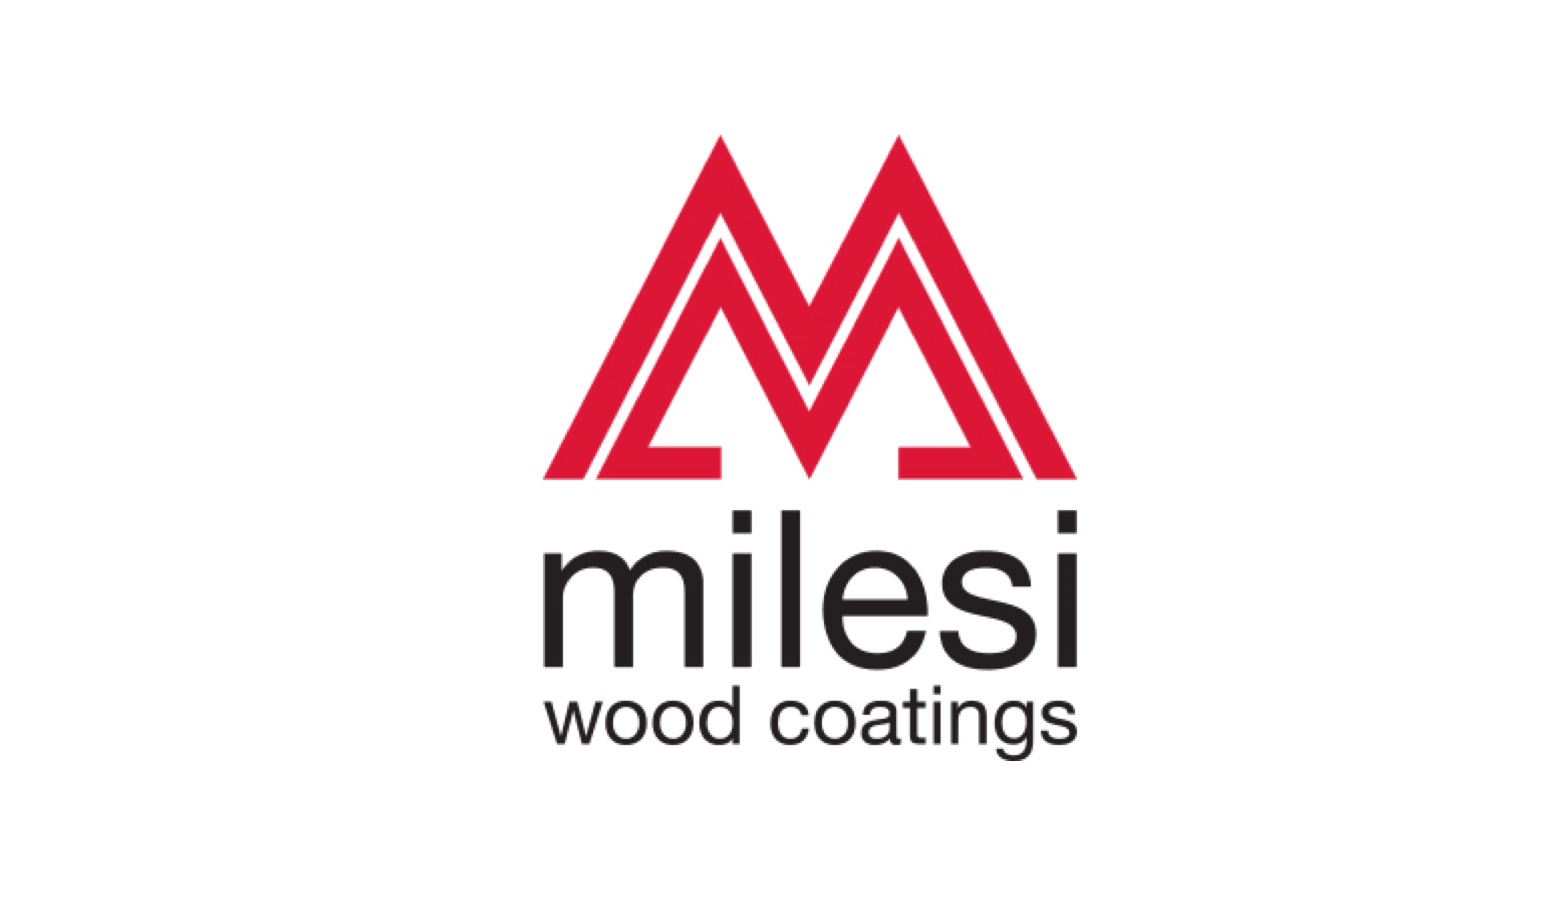 Milesi wood coatings